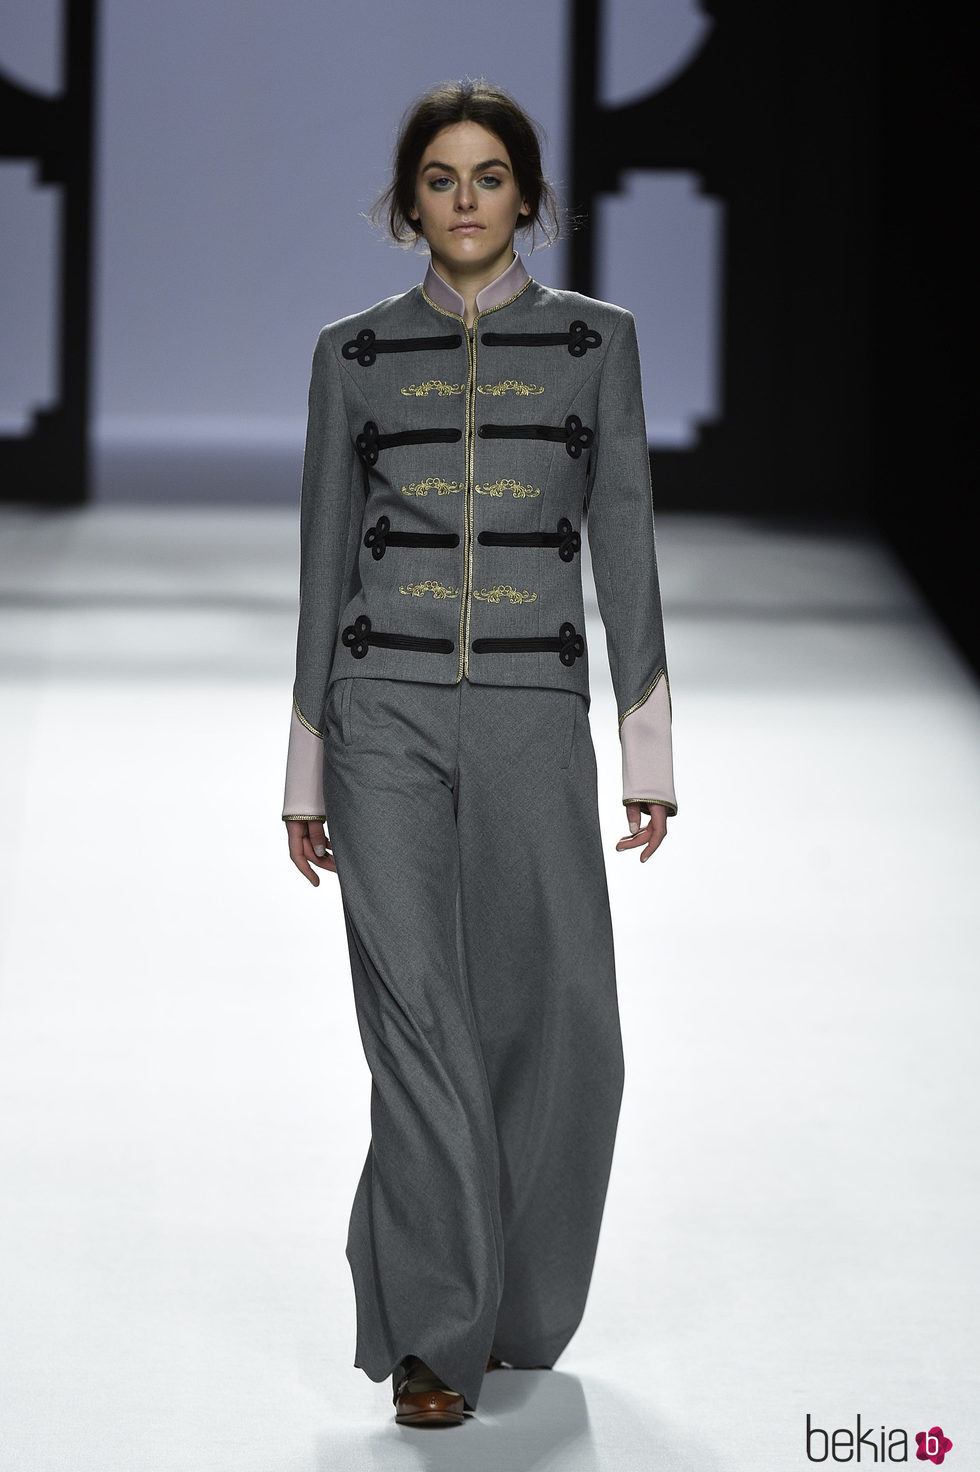 Traje gris ancho y chaqueta militar de Devota & Lomba de la colección otoño/invierno 2017/2018 presentada en Madrid Fashion Week